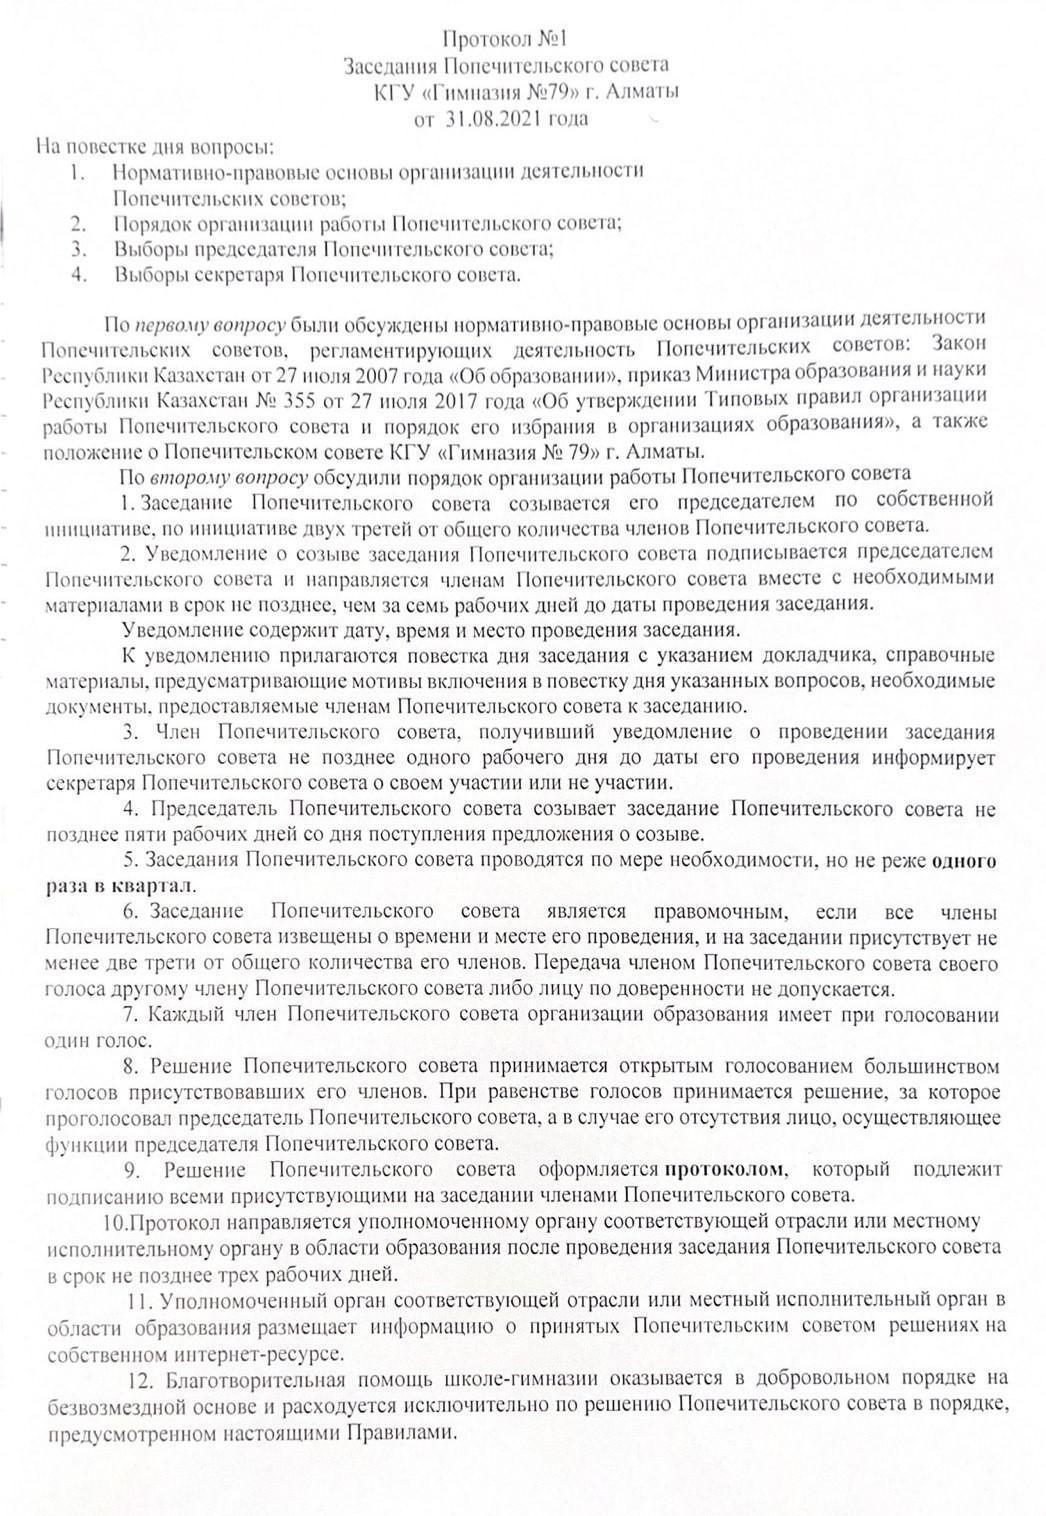 Протокол №1 Заседания Попечительского совета КГУ "Гимназия №79"